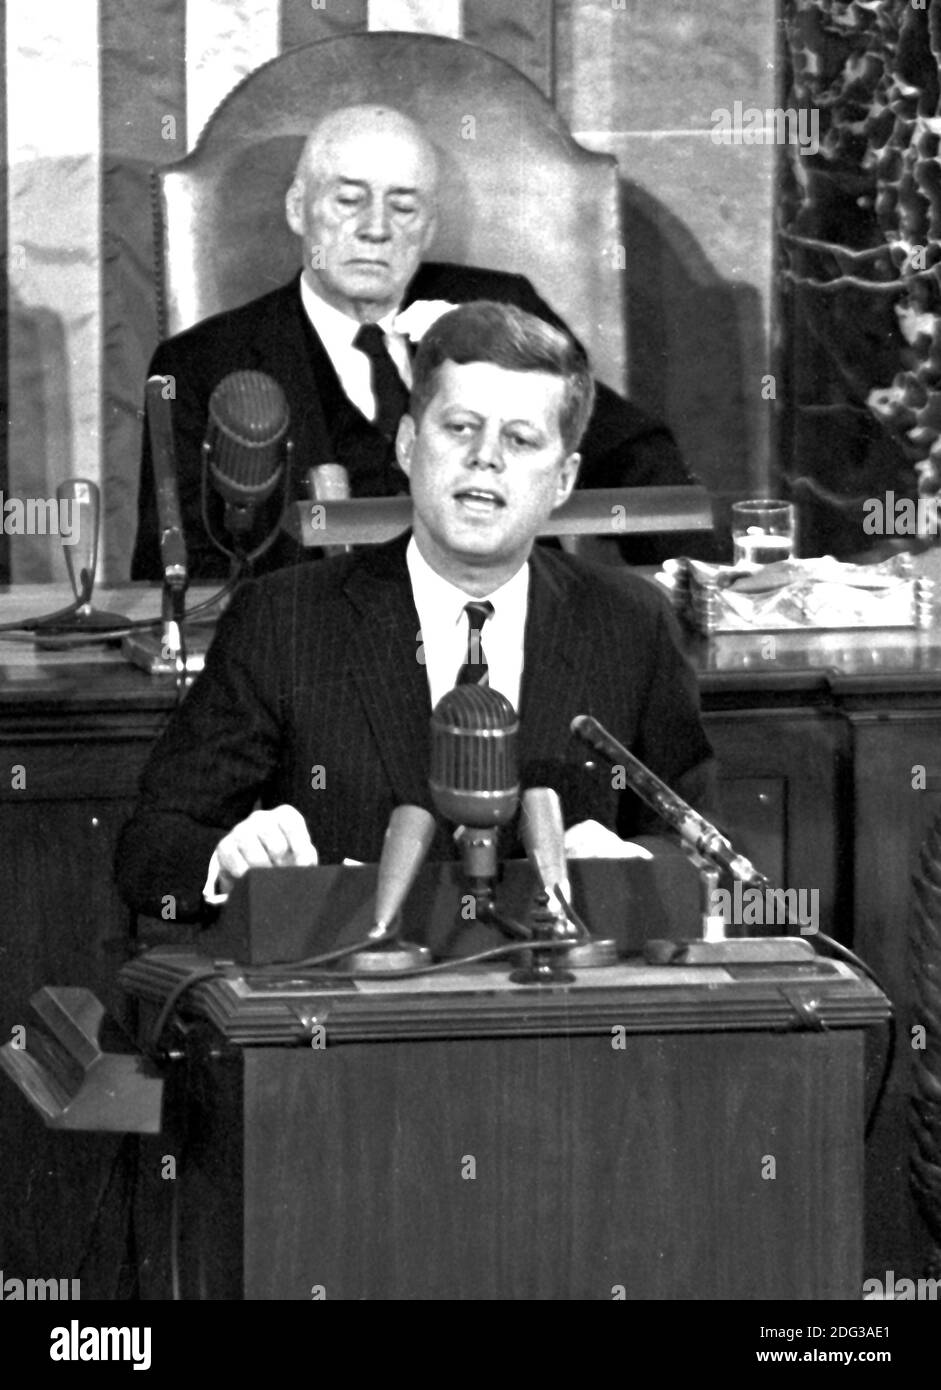 Le président des États-Unis John F. Kennedy a exposé sa vision de l'exploration habitée de l'espace lors d'une session conjointe du Congrès des États-Unis, à Washington, DC, Etats-Unis, le 25 mai 1961 quand il a déclaré, '... Je crois que cette nation devrait s'engager à atteindre l'objectif, avant que cette décennie soit terminée, D'atterrir un homme sur la Lune et de le ramener en toute sécurité sur la Terre. Cet objectif a été atteint lorsque l'astronaute Neil A. Armstrong est devenu le premier humain à marcher sur la Lune à 10 h 56 HAE, le 20 juillet 1969. Le Président de la Chambre Sam T. Rayburn (démocrate du Texas) en arrière-plan. Photo par AR Banque D'Images